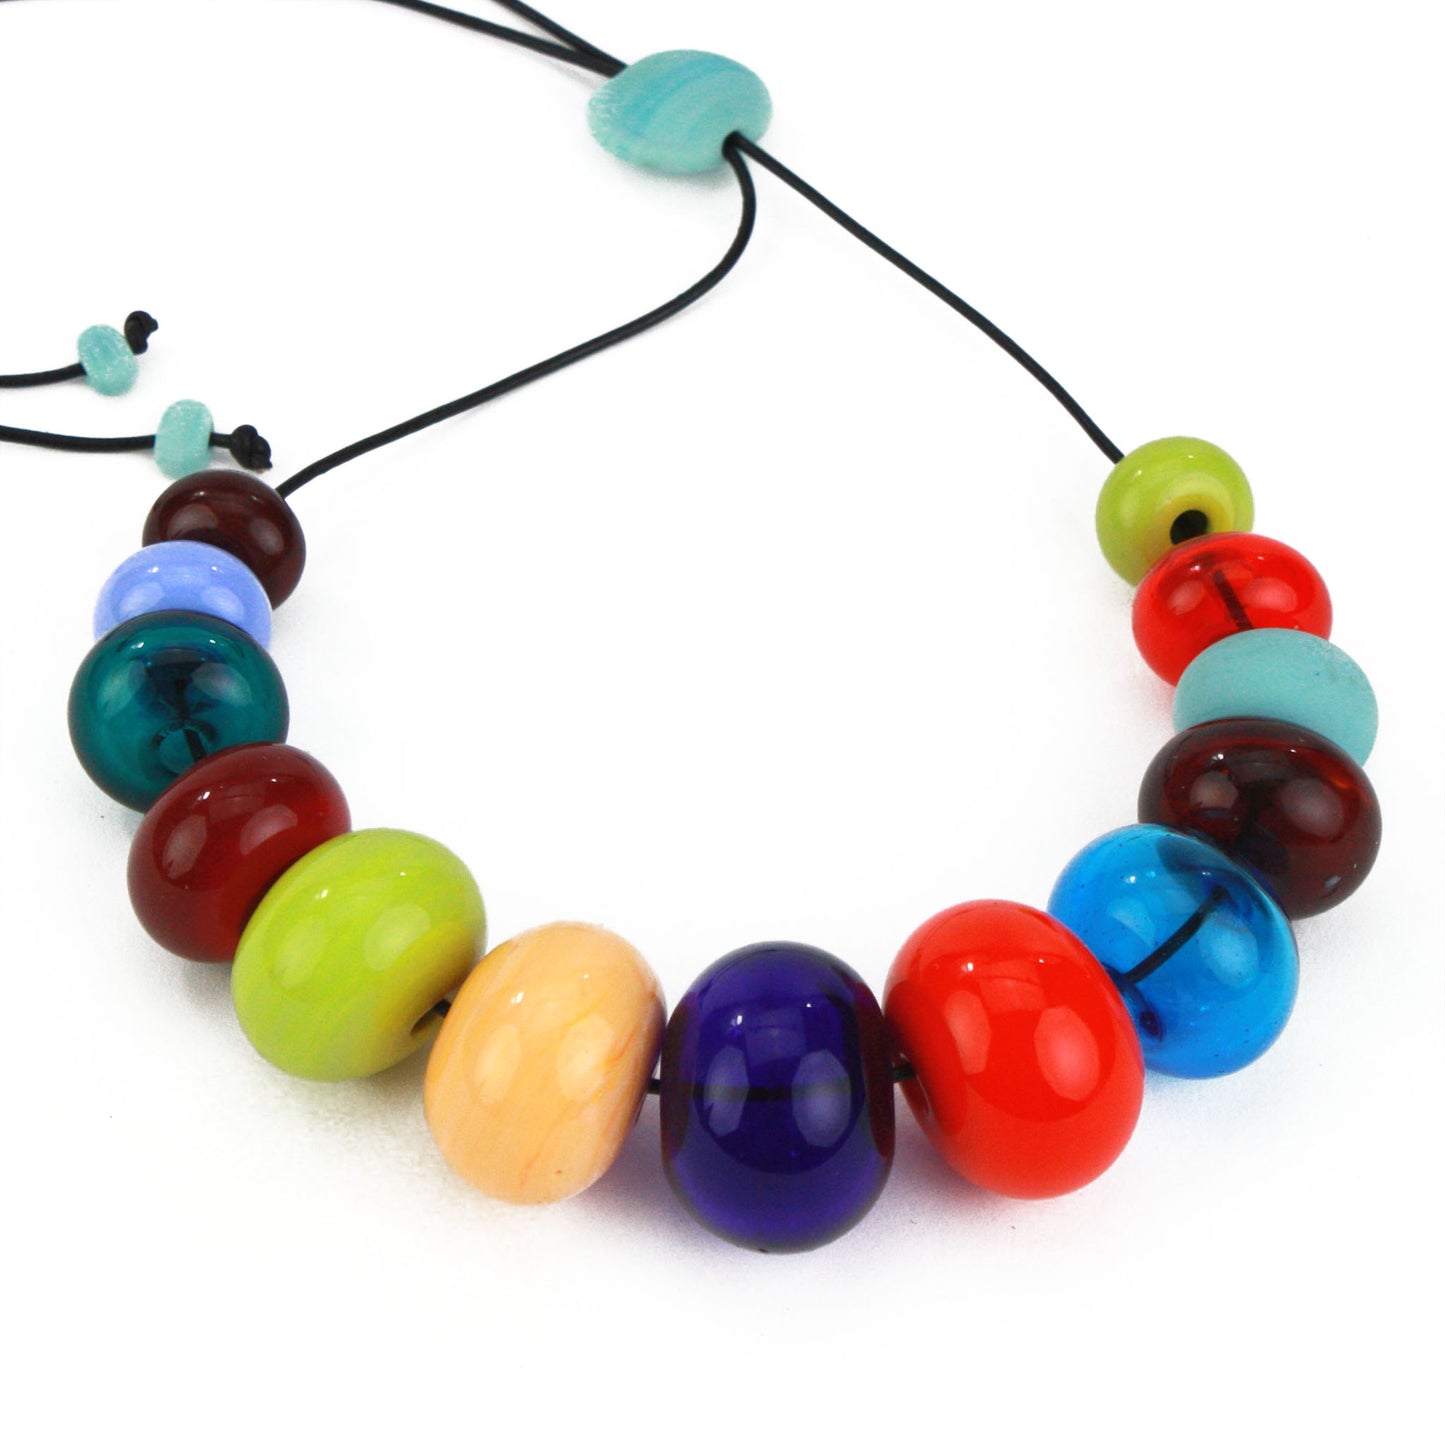 13 bead bubble necklace - multi-colored